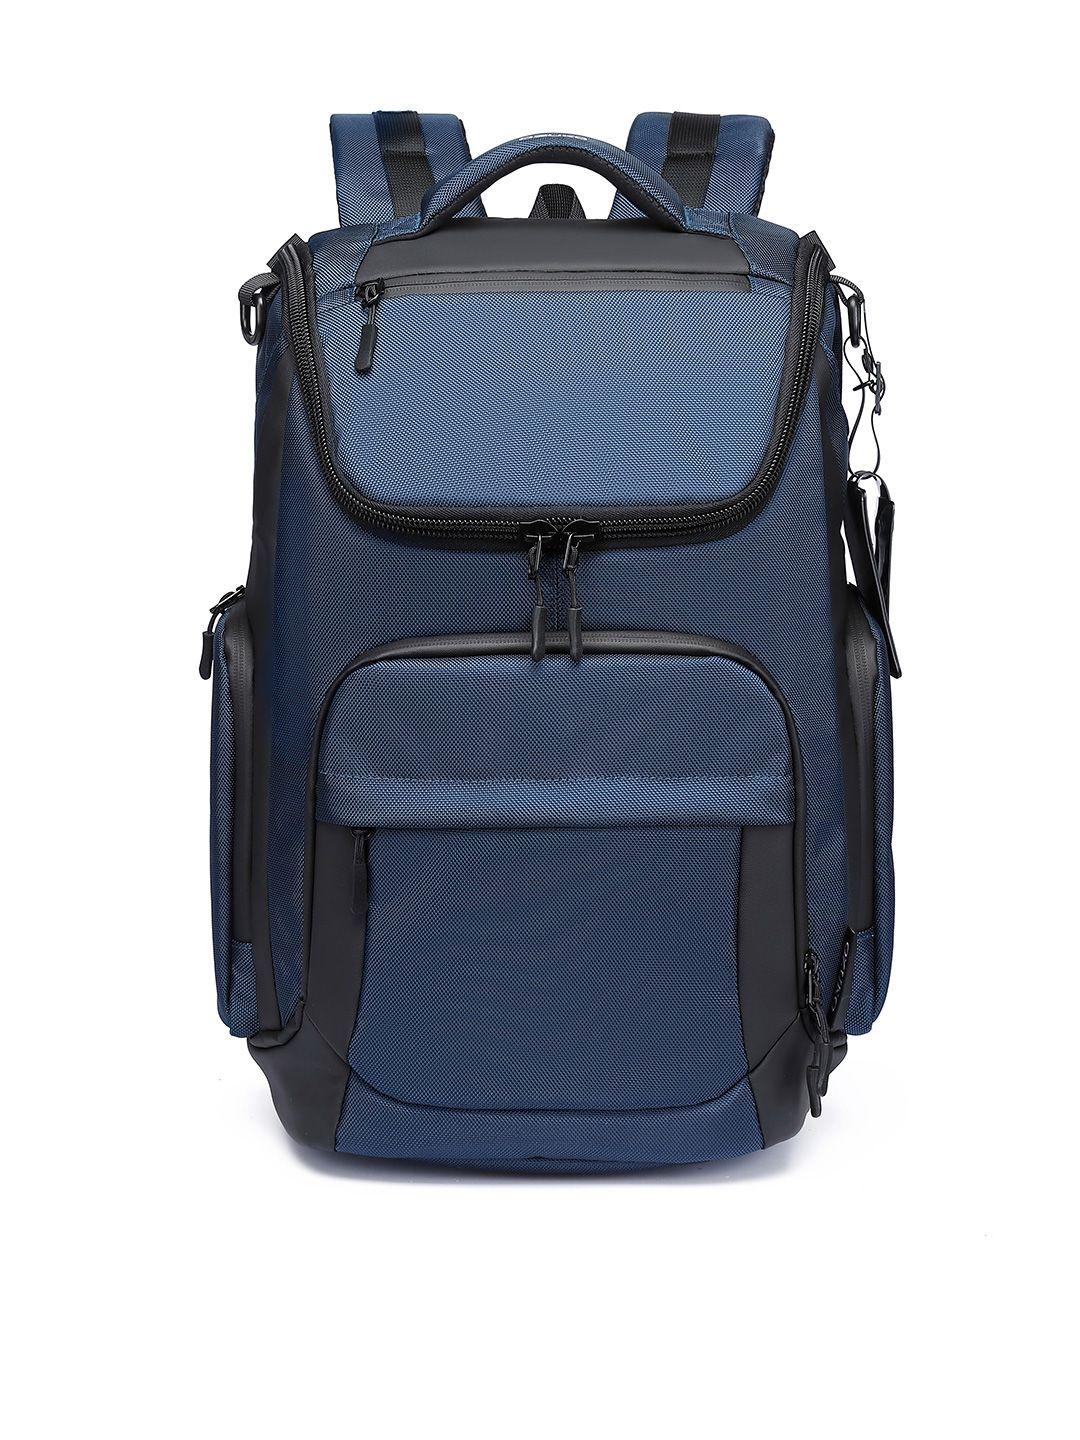 ozuko aero voyager soft case medium backpack